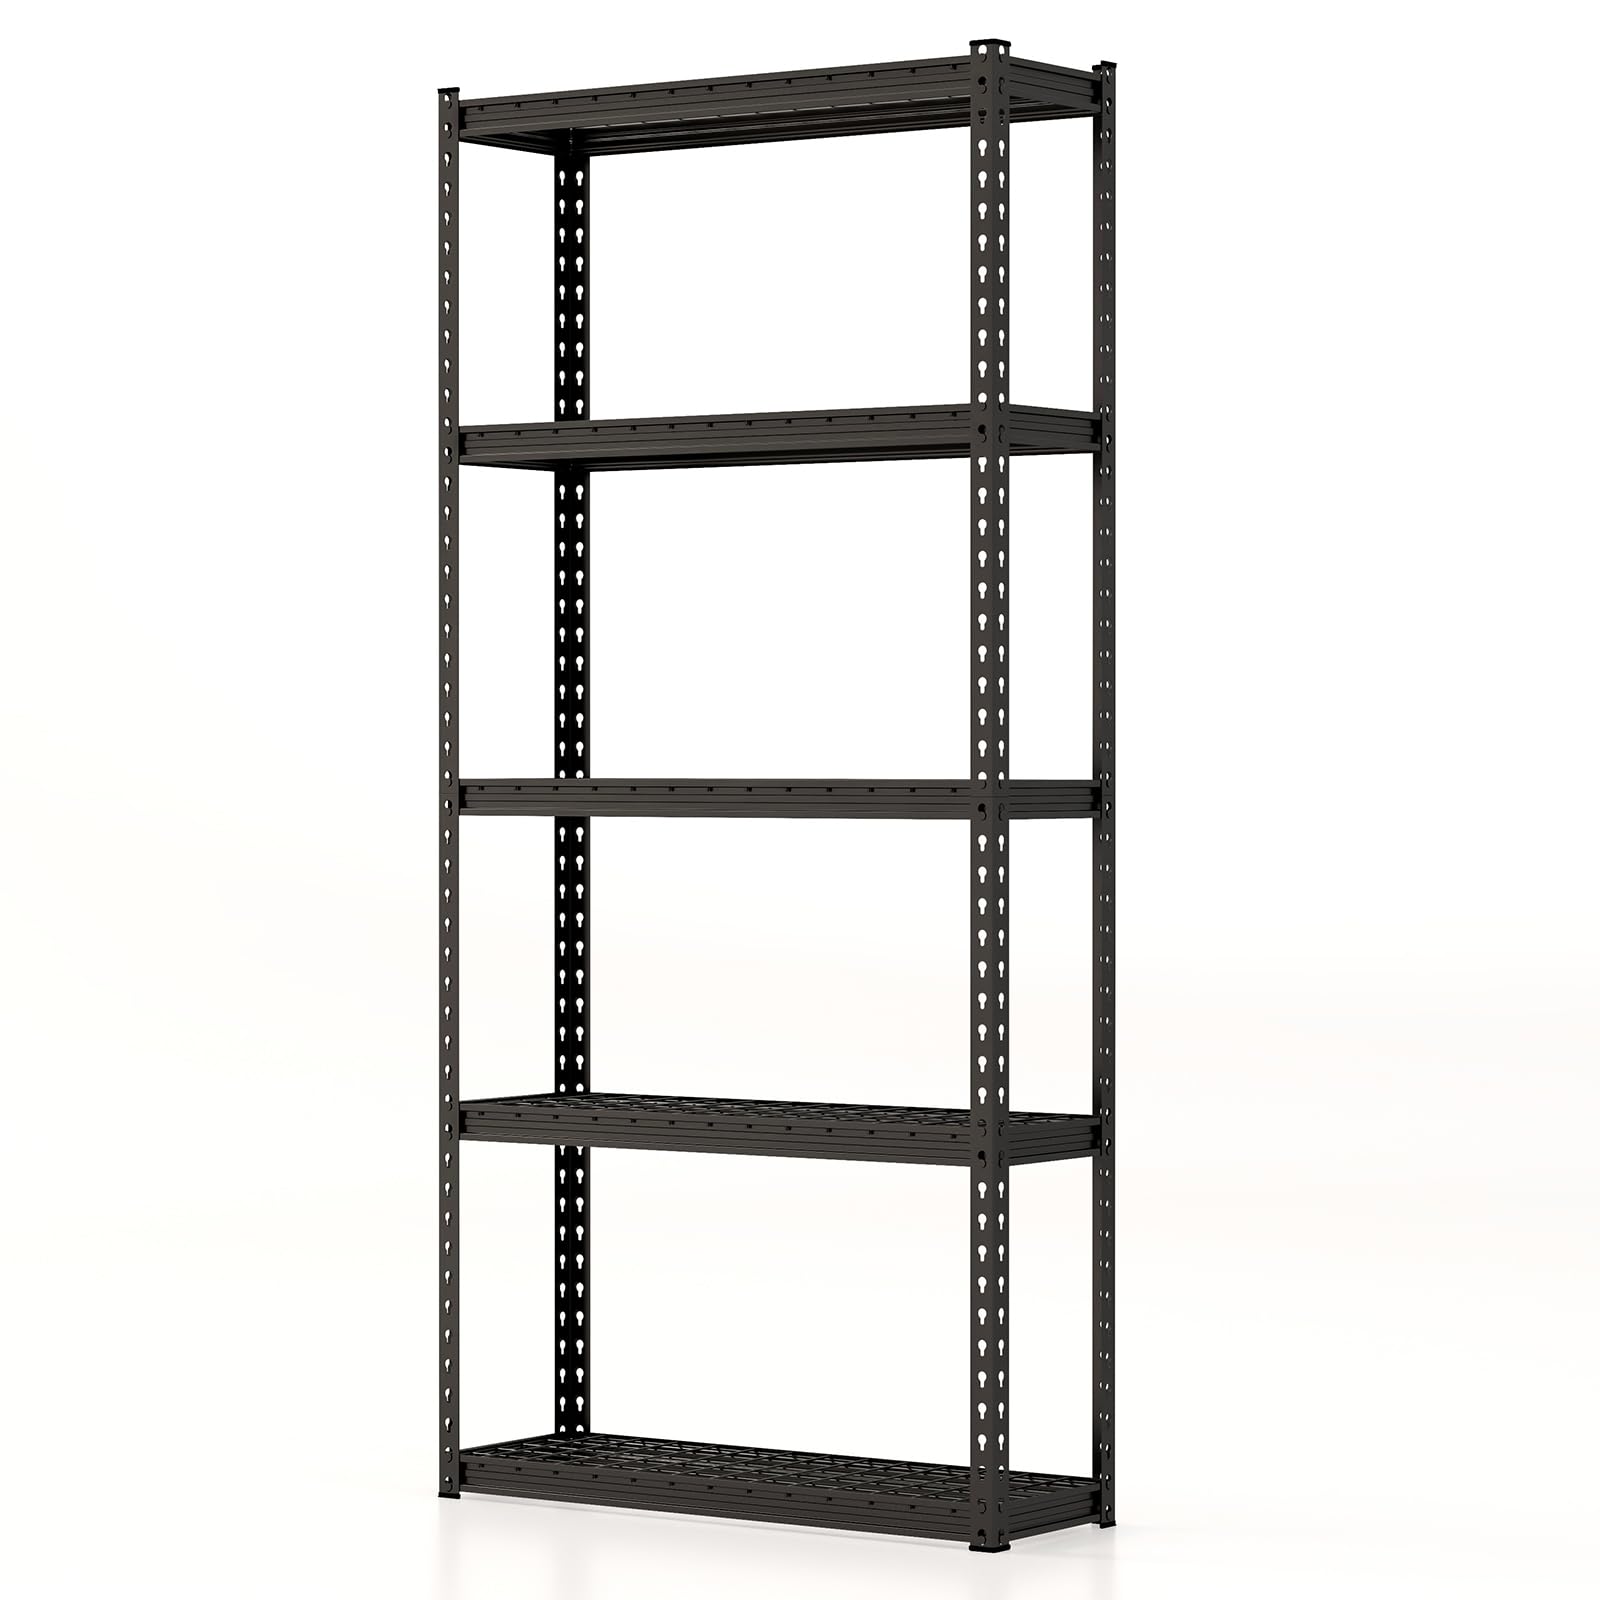 Giantex 5-Tier Storage Shelves, 35.5" x 15.5" x 72" Utility Rack Shelf